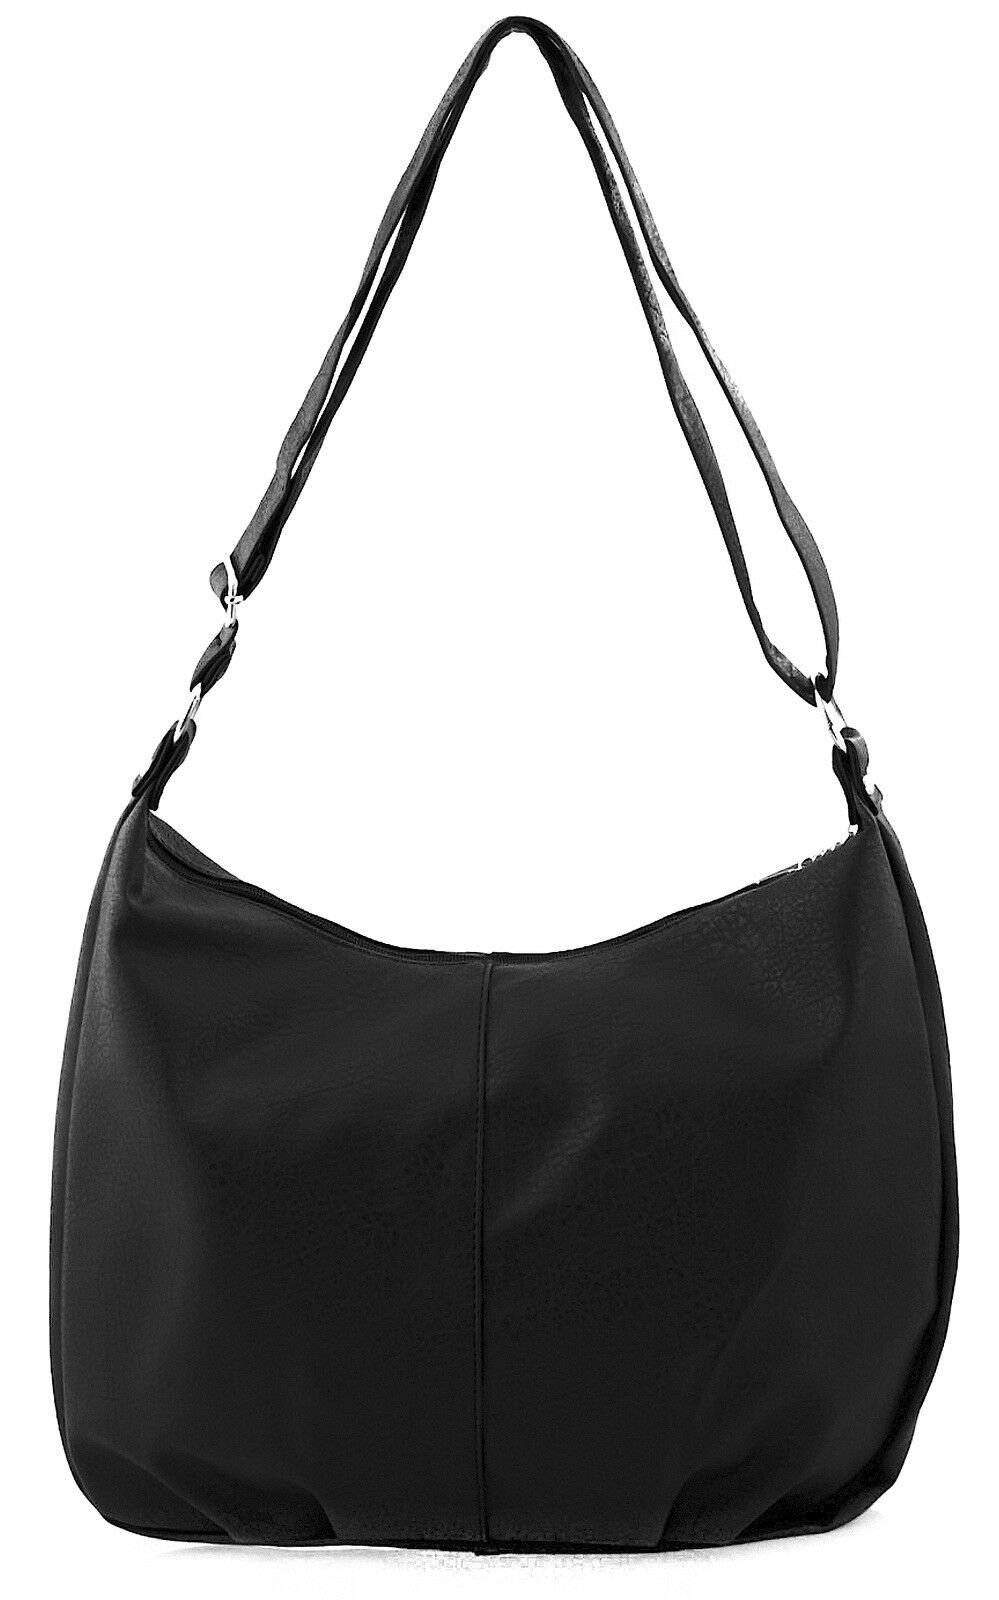 Damen Handtasche Schwarz Schultertasche Shopper Bag gross groß XL Damentasche 